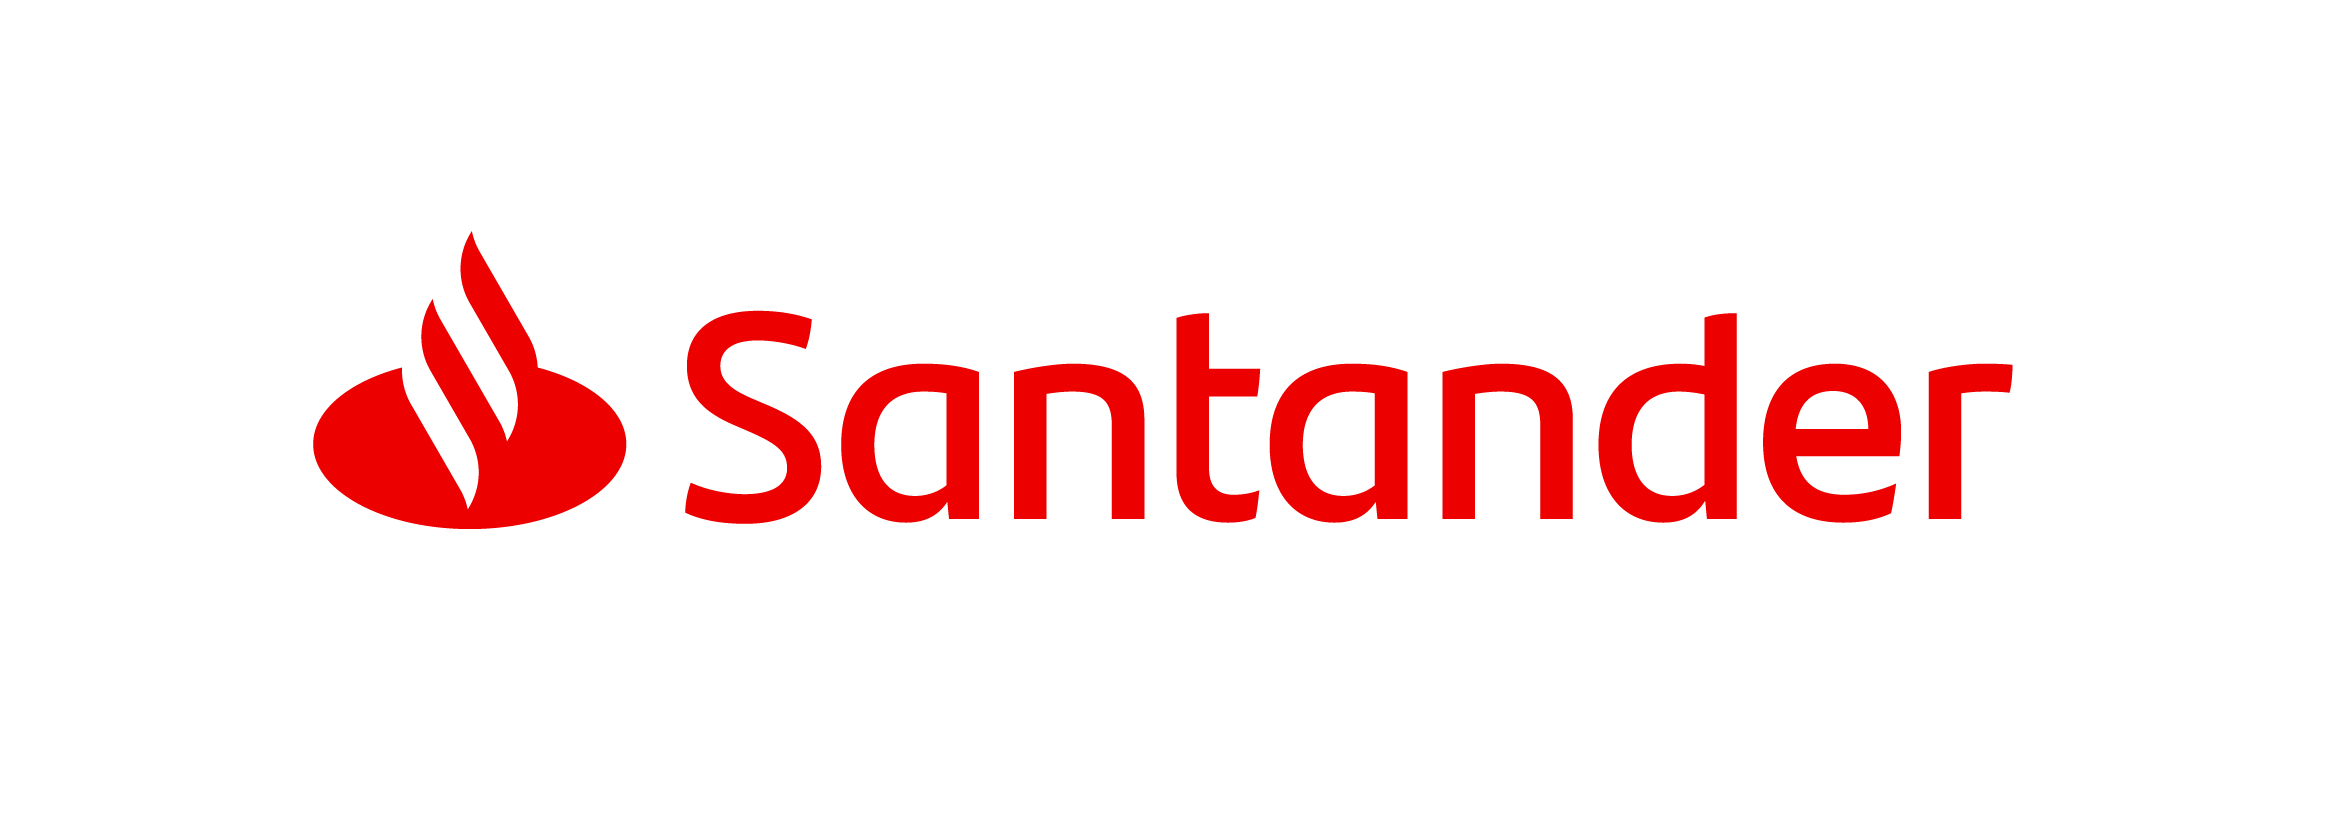 santander-bank-logo